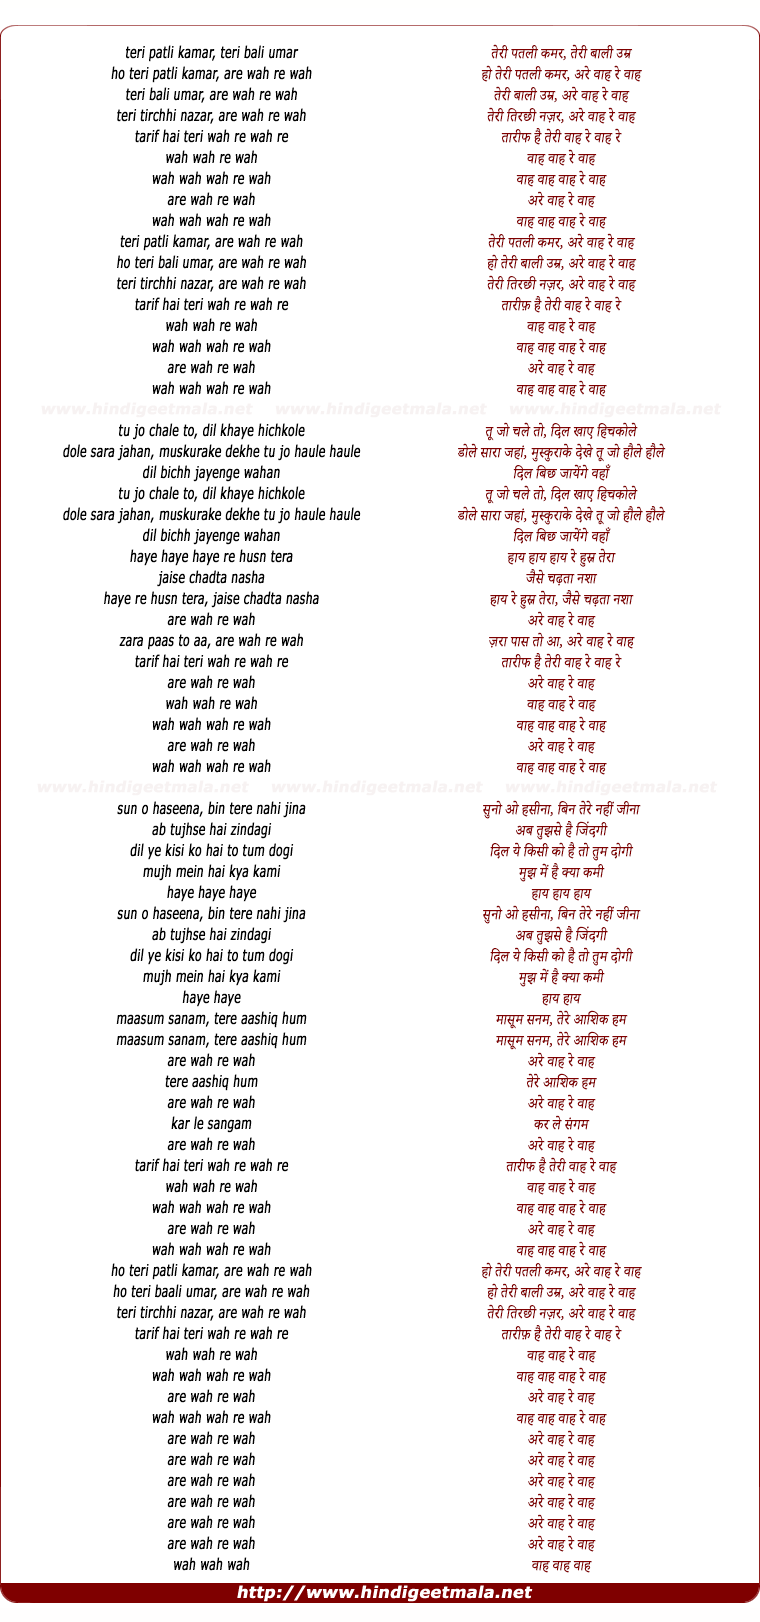 lyrics of song Teri Patli Kamar Teri Bali Umar